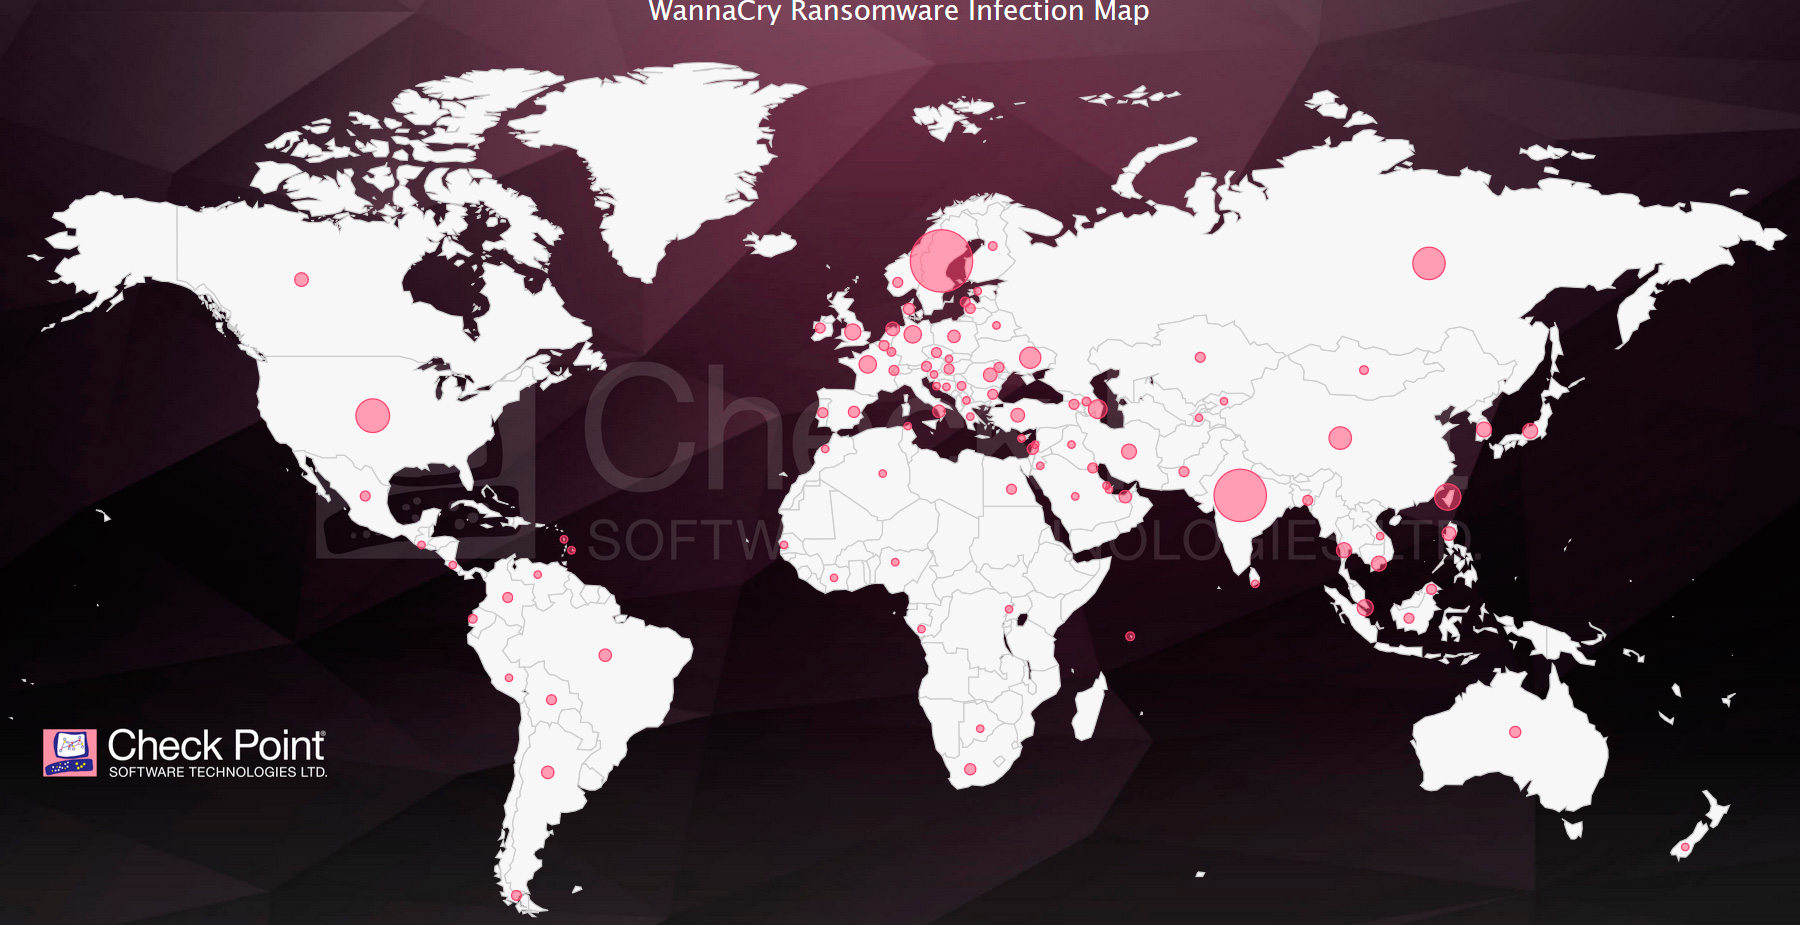 El mapa Check Point WannaCry Ransomware Infection muestra estadsticas de amenazas clave y datos especficos de cada pas en tiempo real...